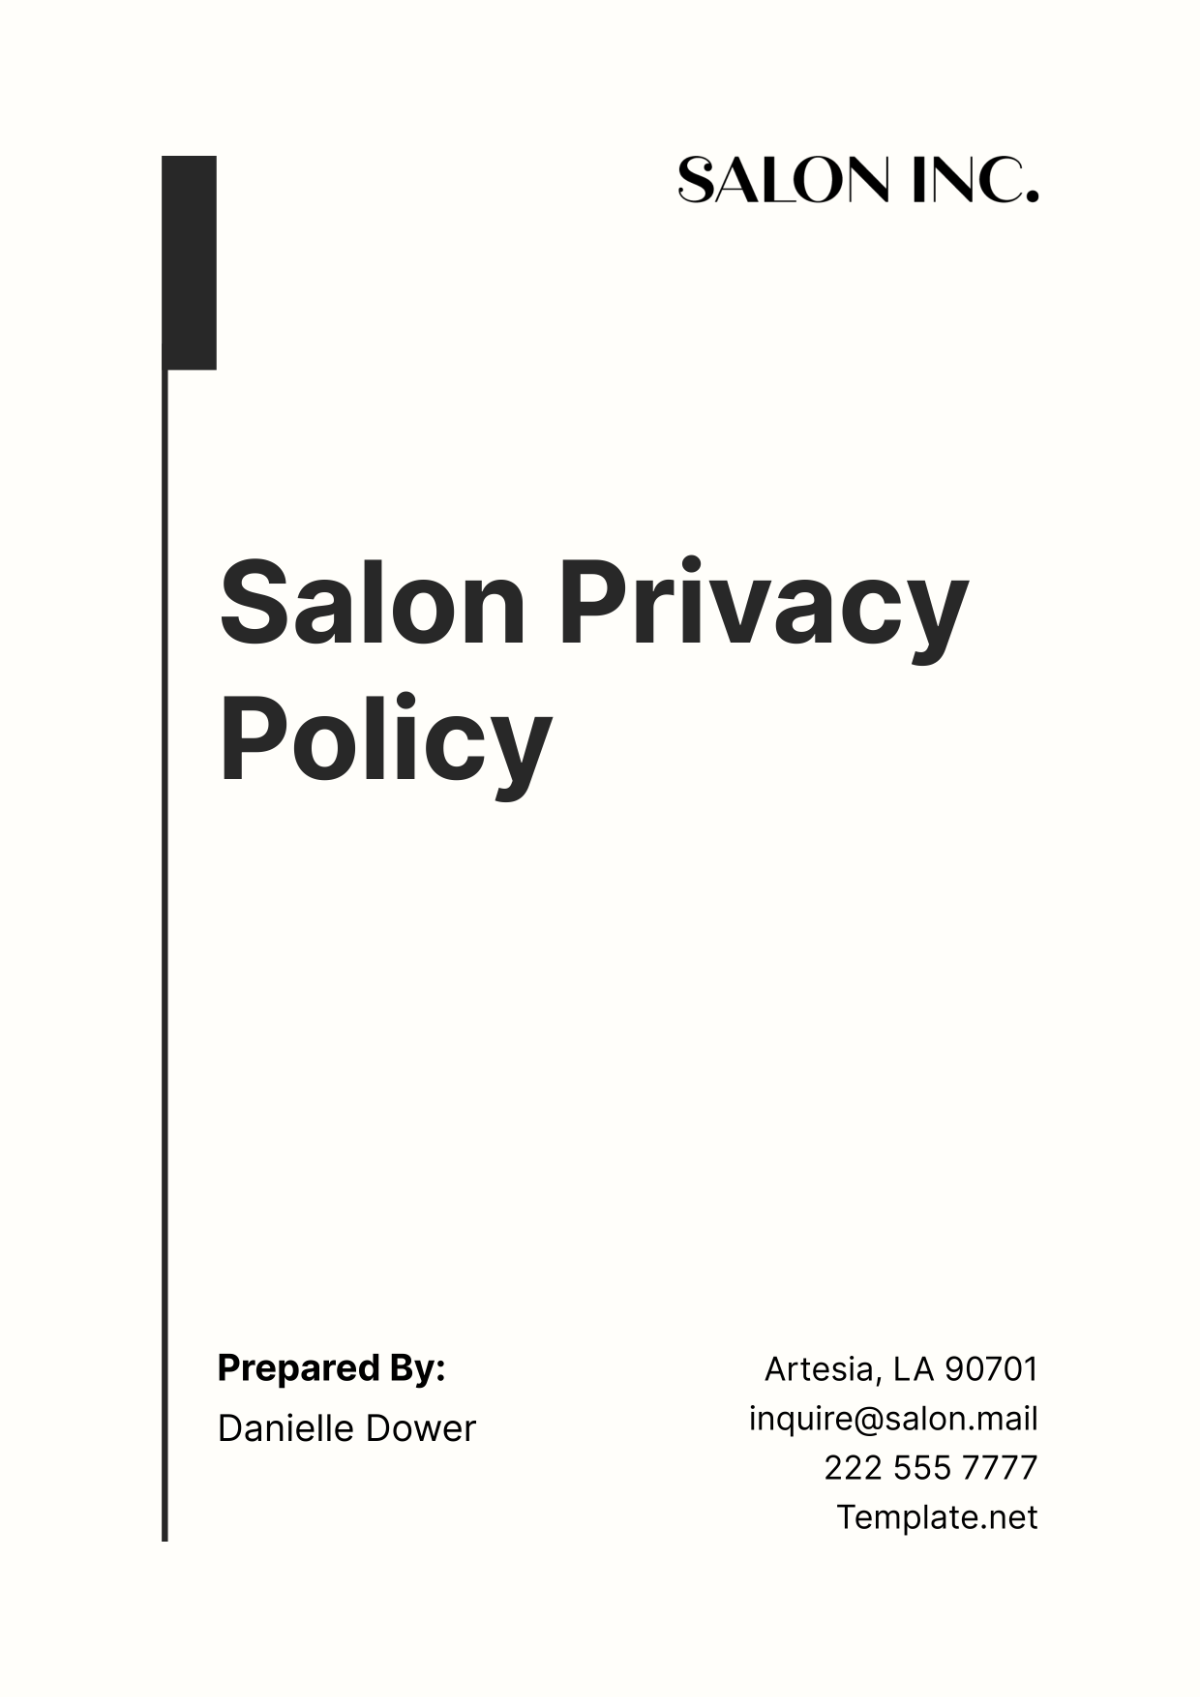 Salon Privacy Policy Template